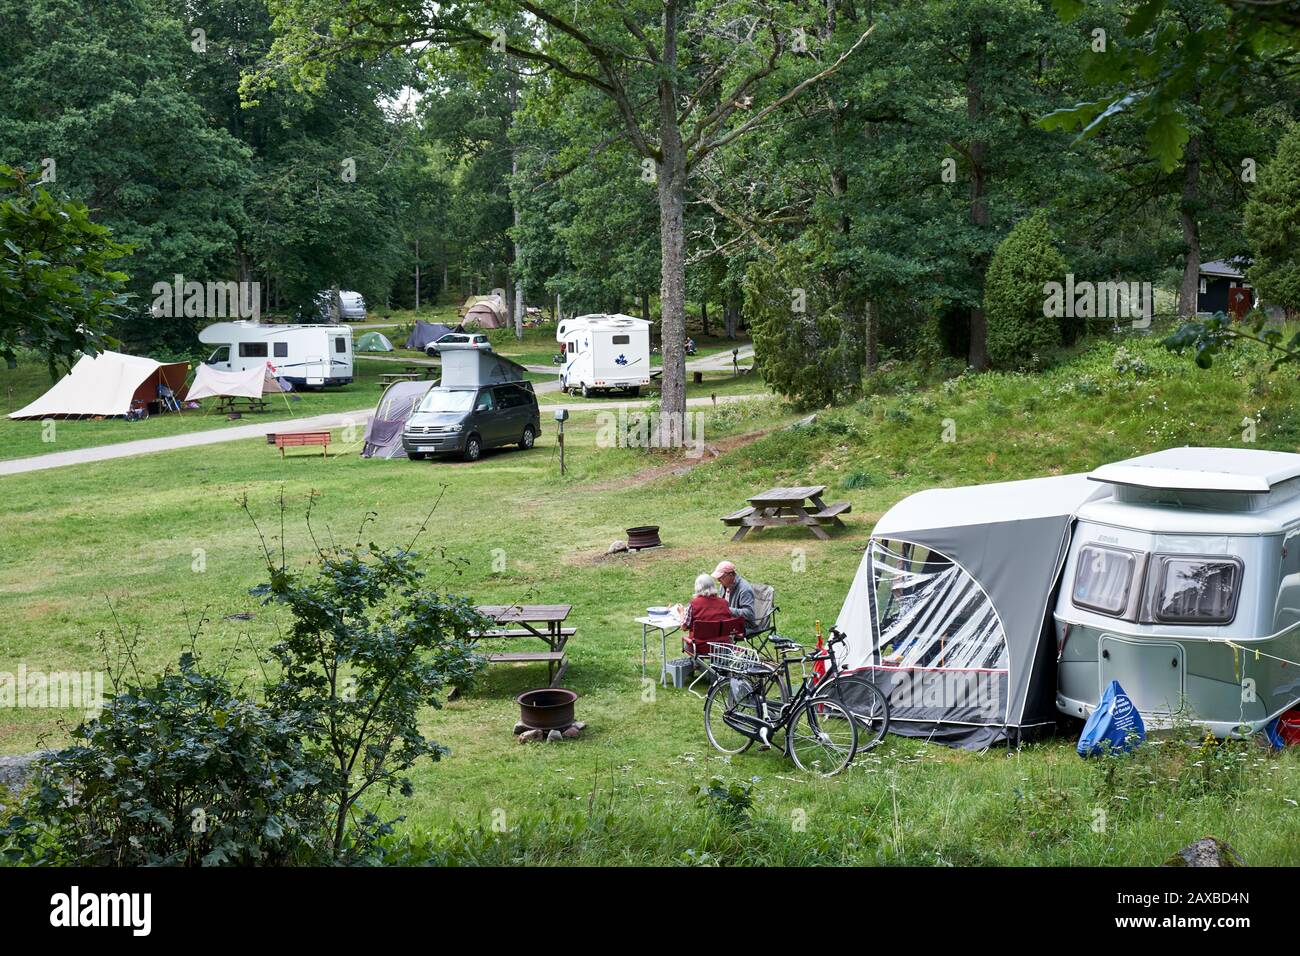 Site de camping paisible en bois avec caravanes, camping-cars et tentes Banque D'Images